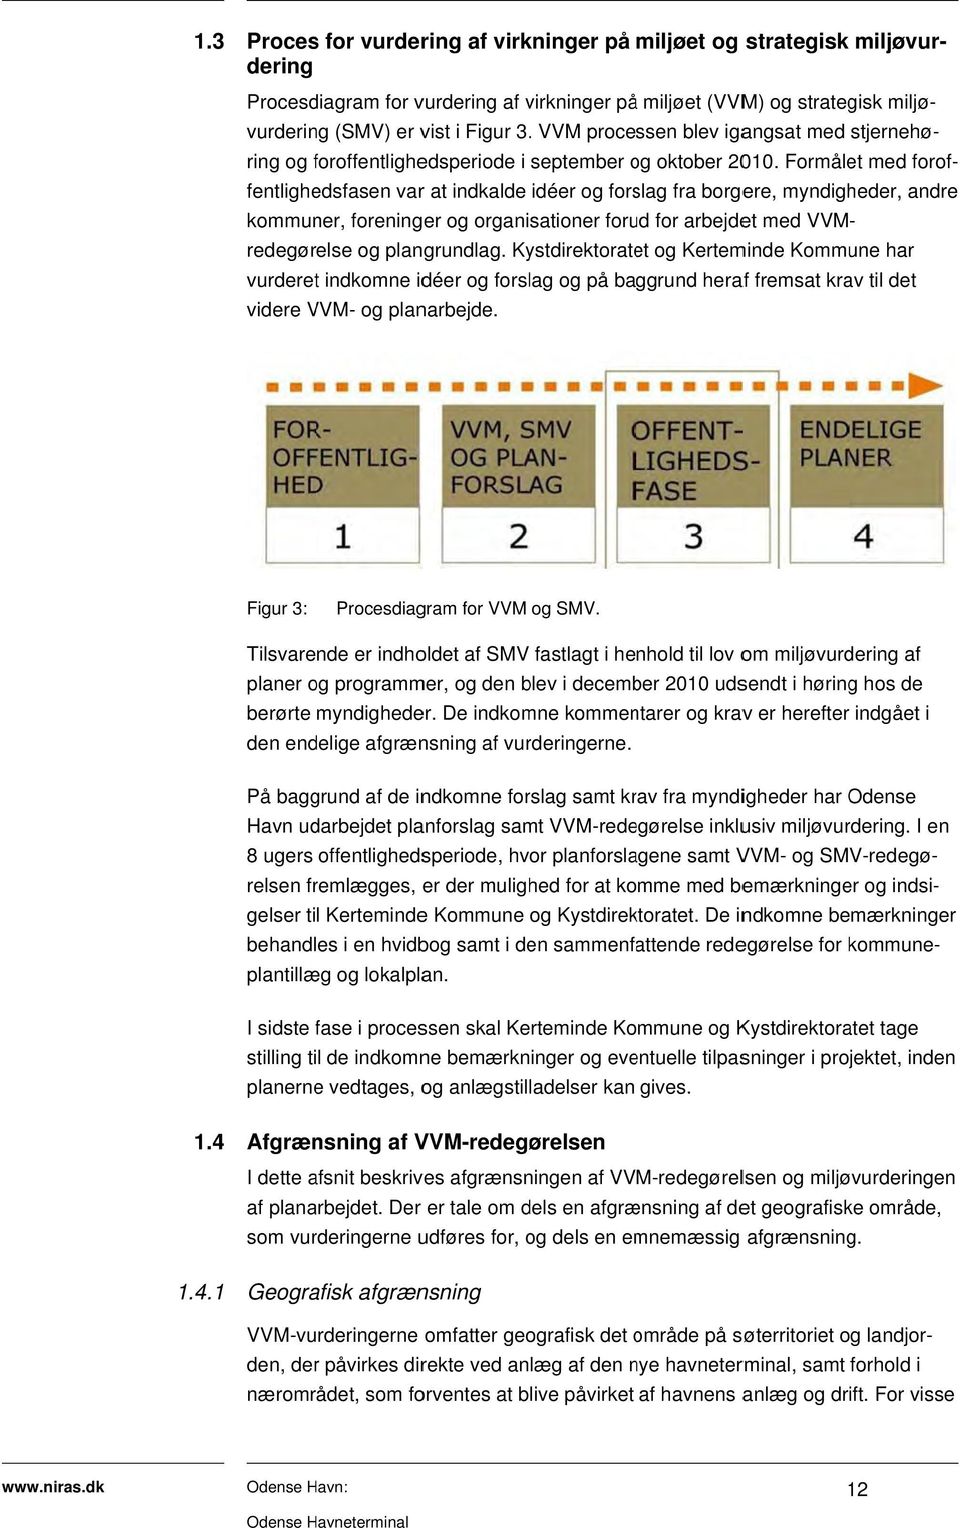 VVM- redegørelse og plangrundlag. Kystdirektoratet og Kerteminde Kommune har ring og foroffentlighef edsperiode i september og o oktober 2010.